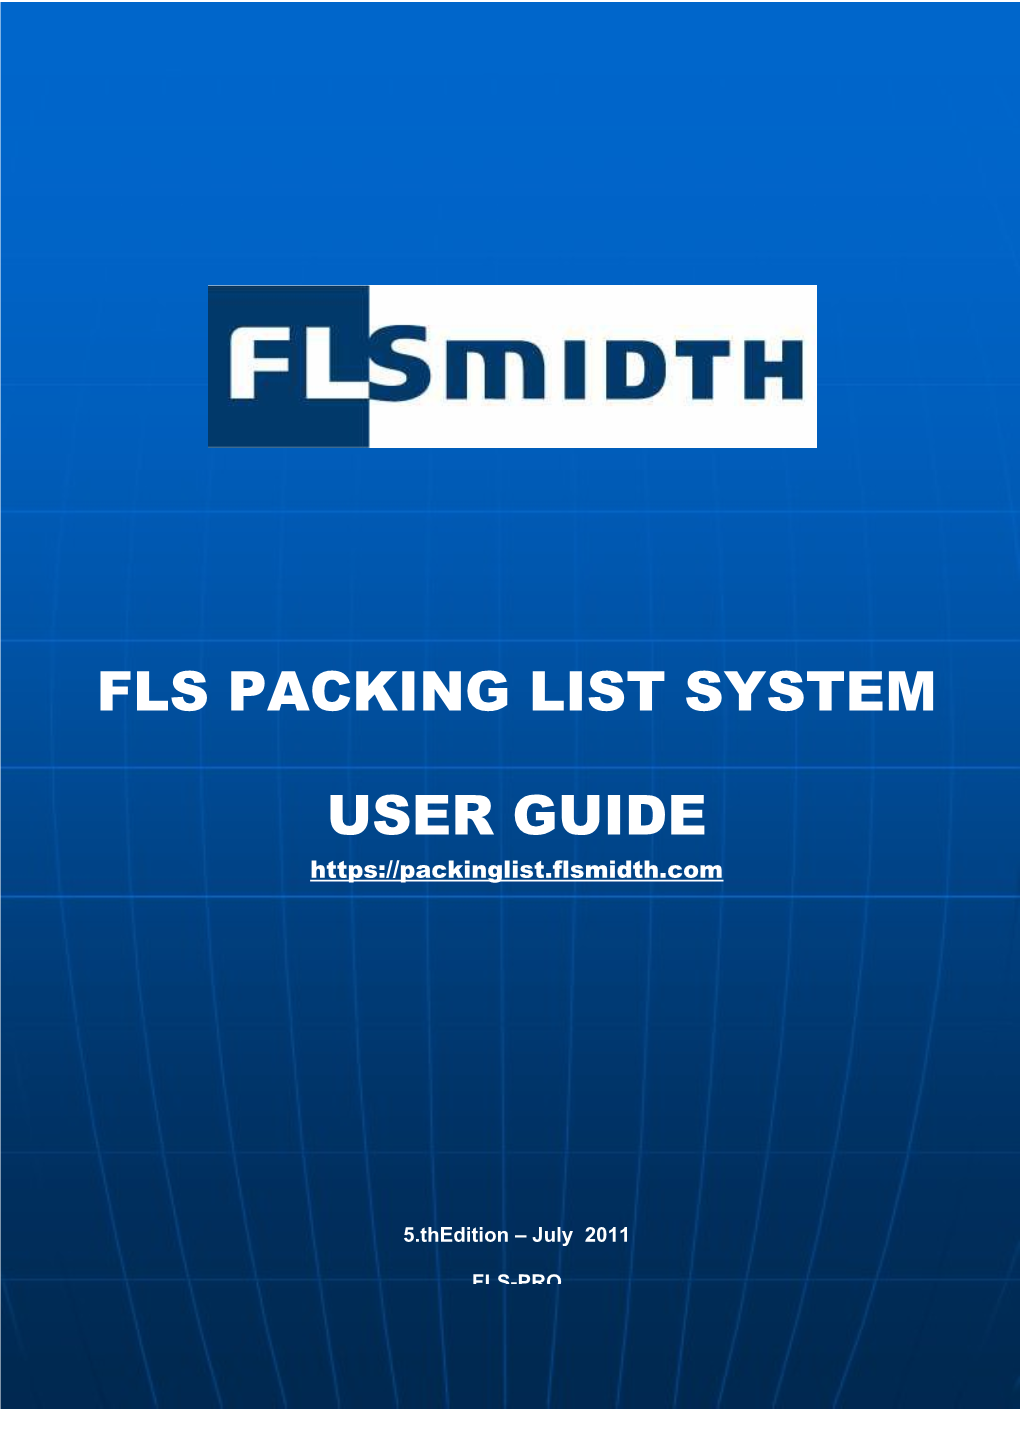 Web Based FLS Packing List – User Guide